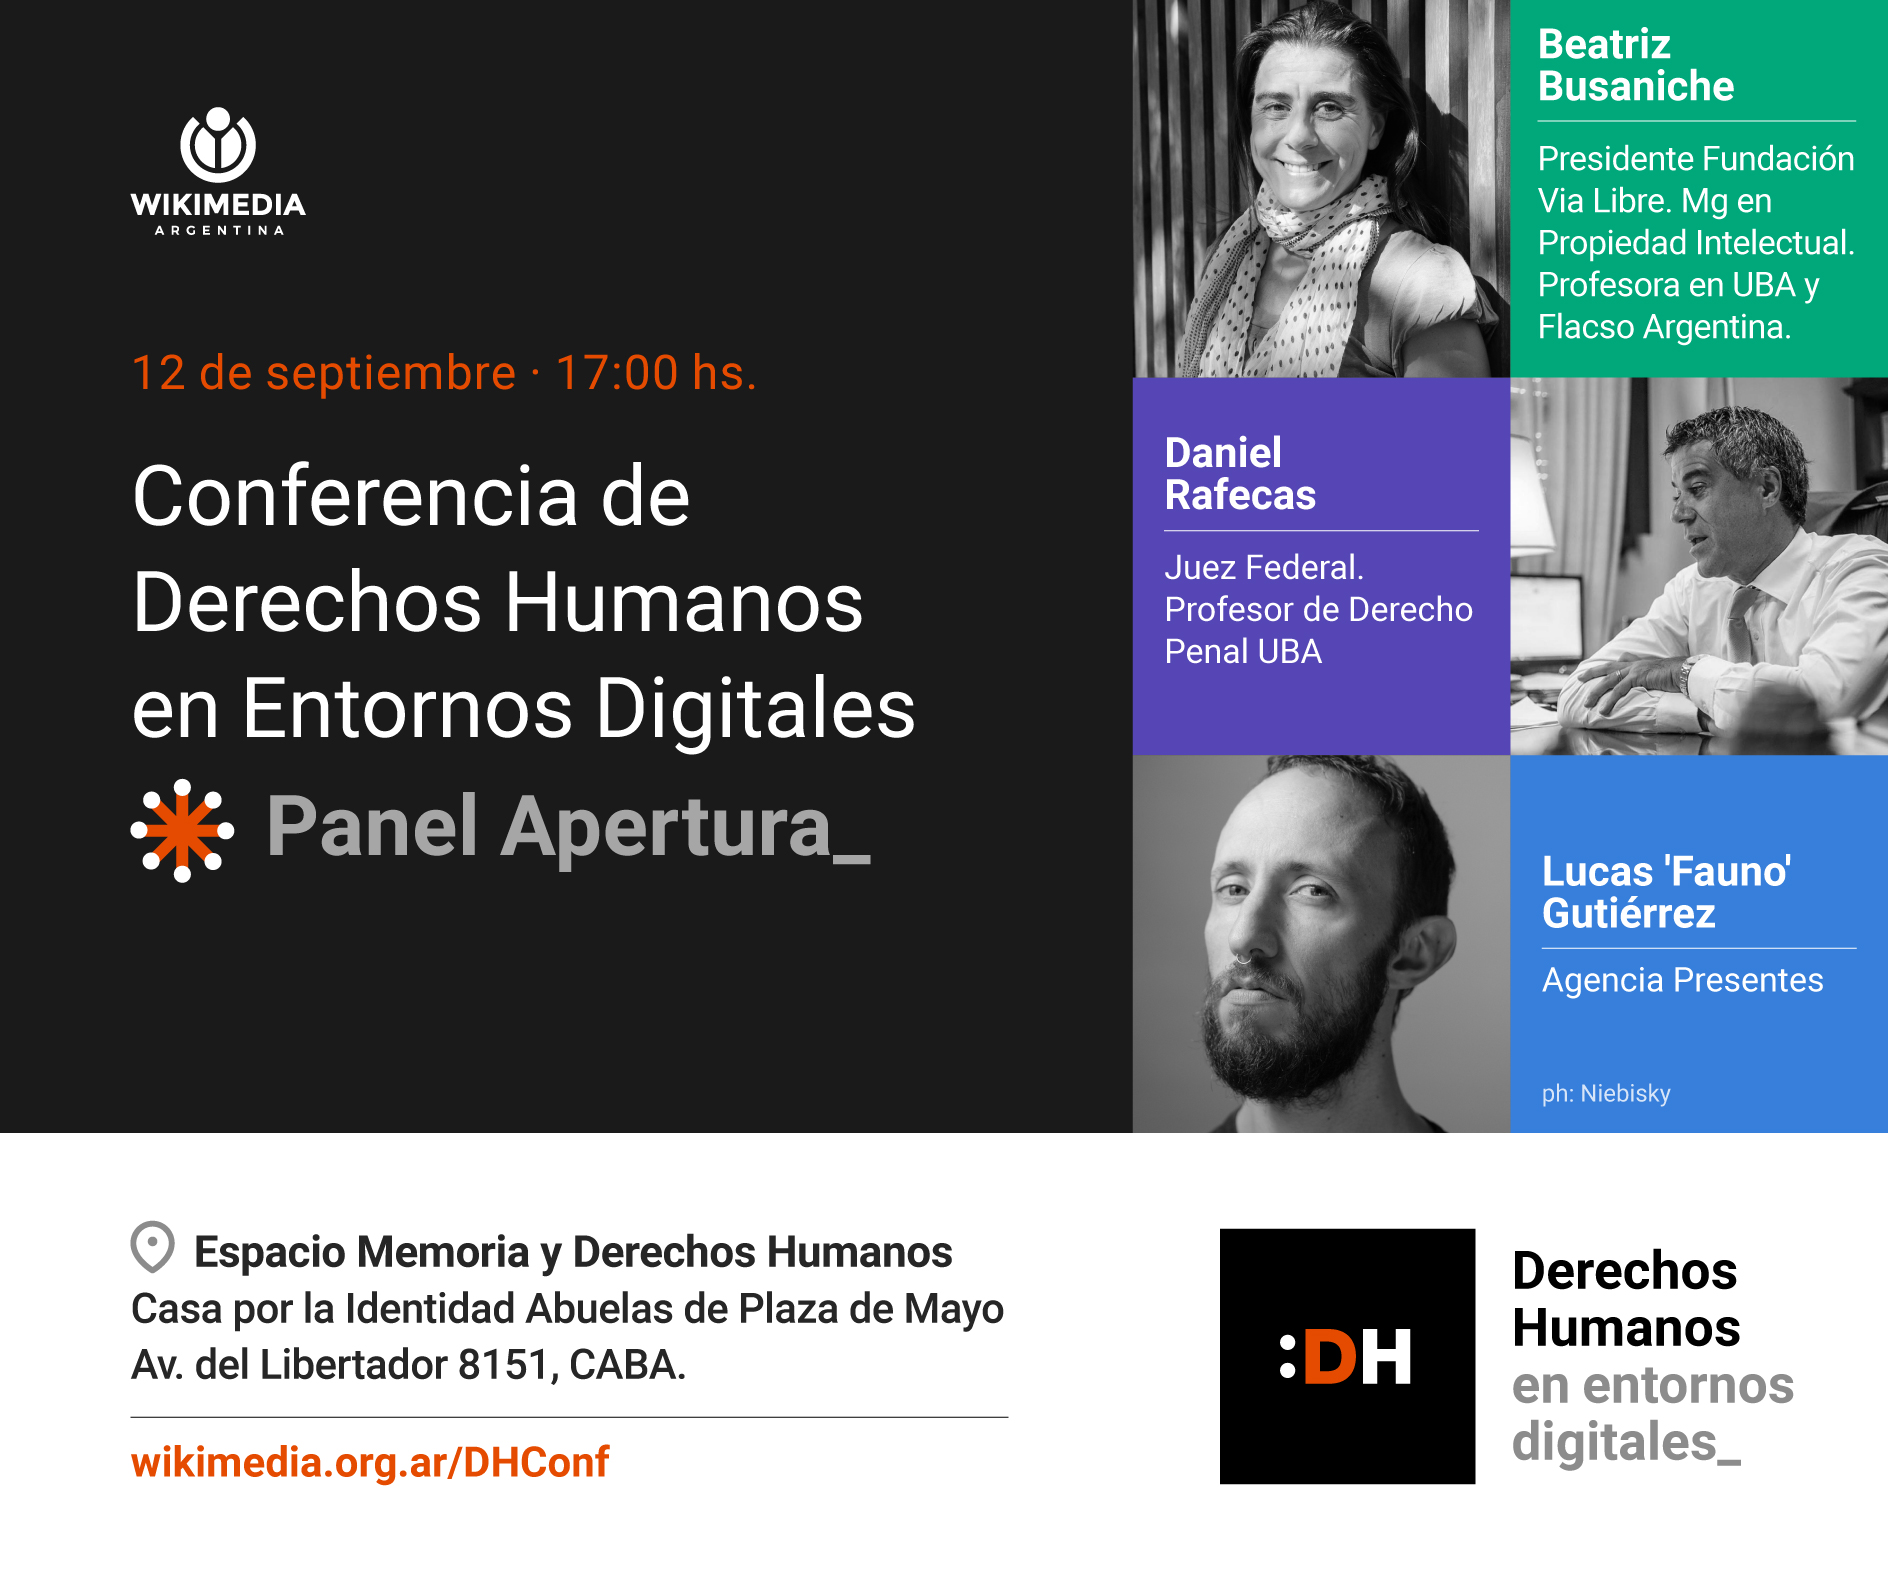 Derechos Humanos en Entornos Digitales: Vía Libre participa del panel de apertura